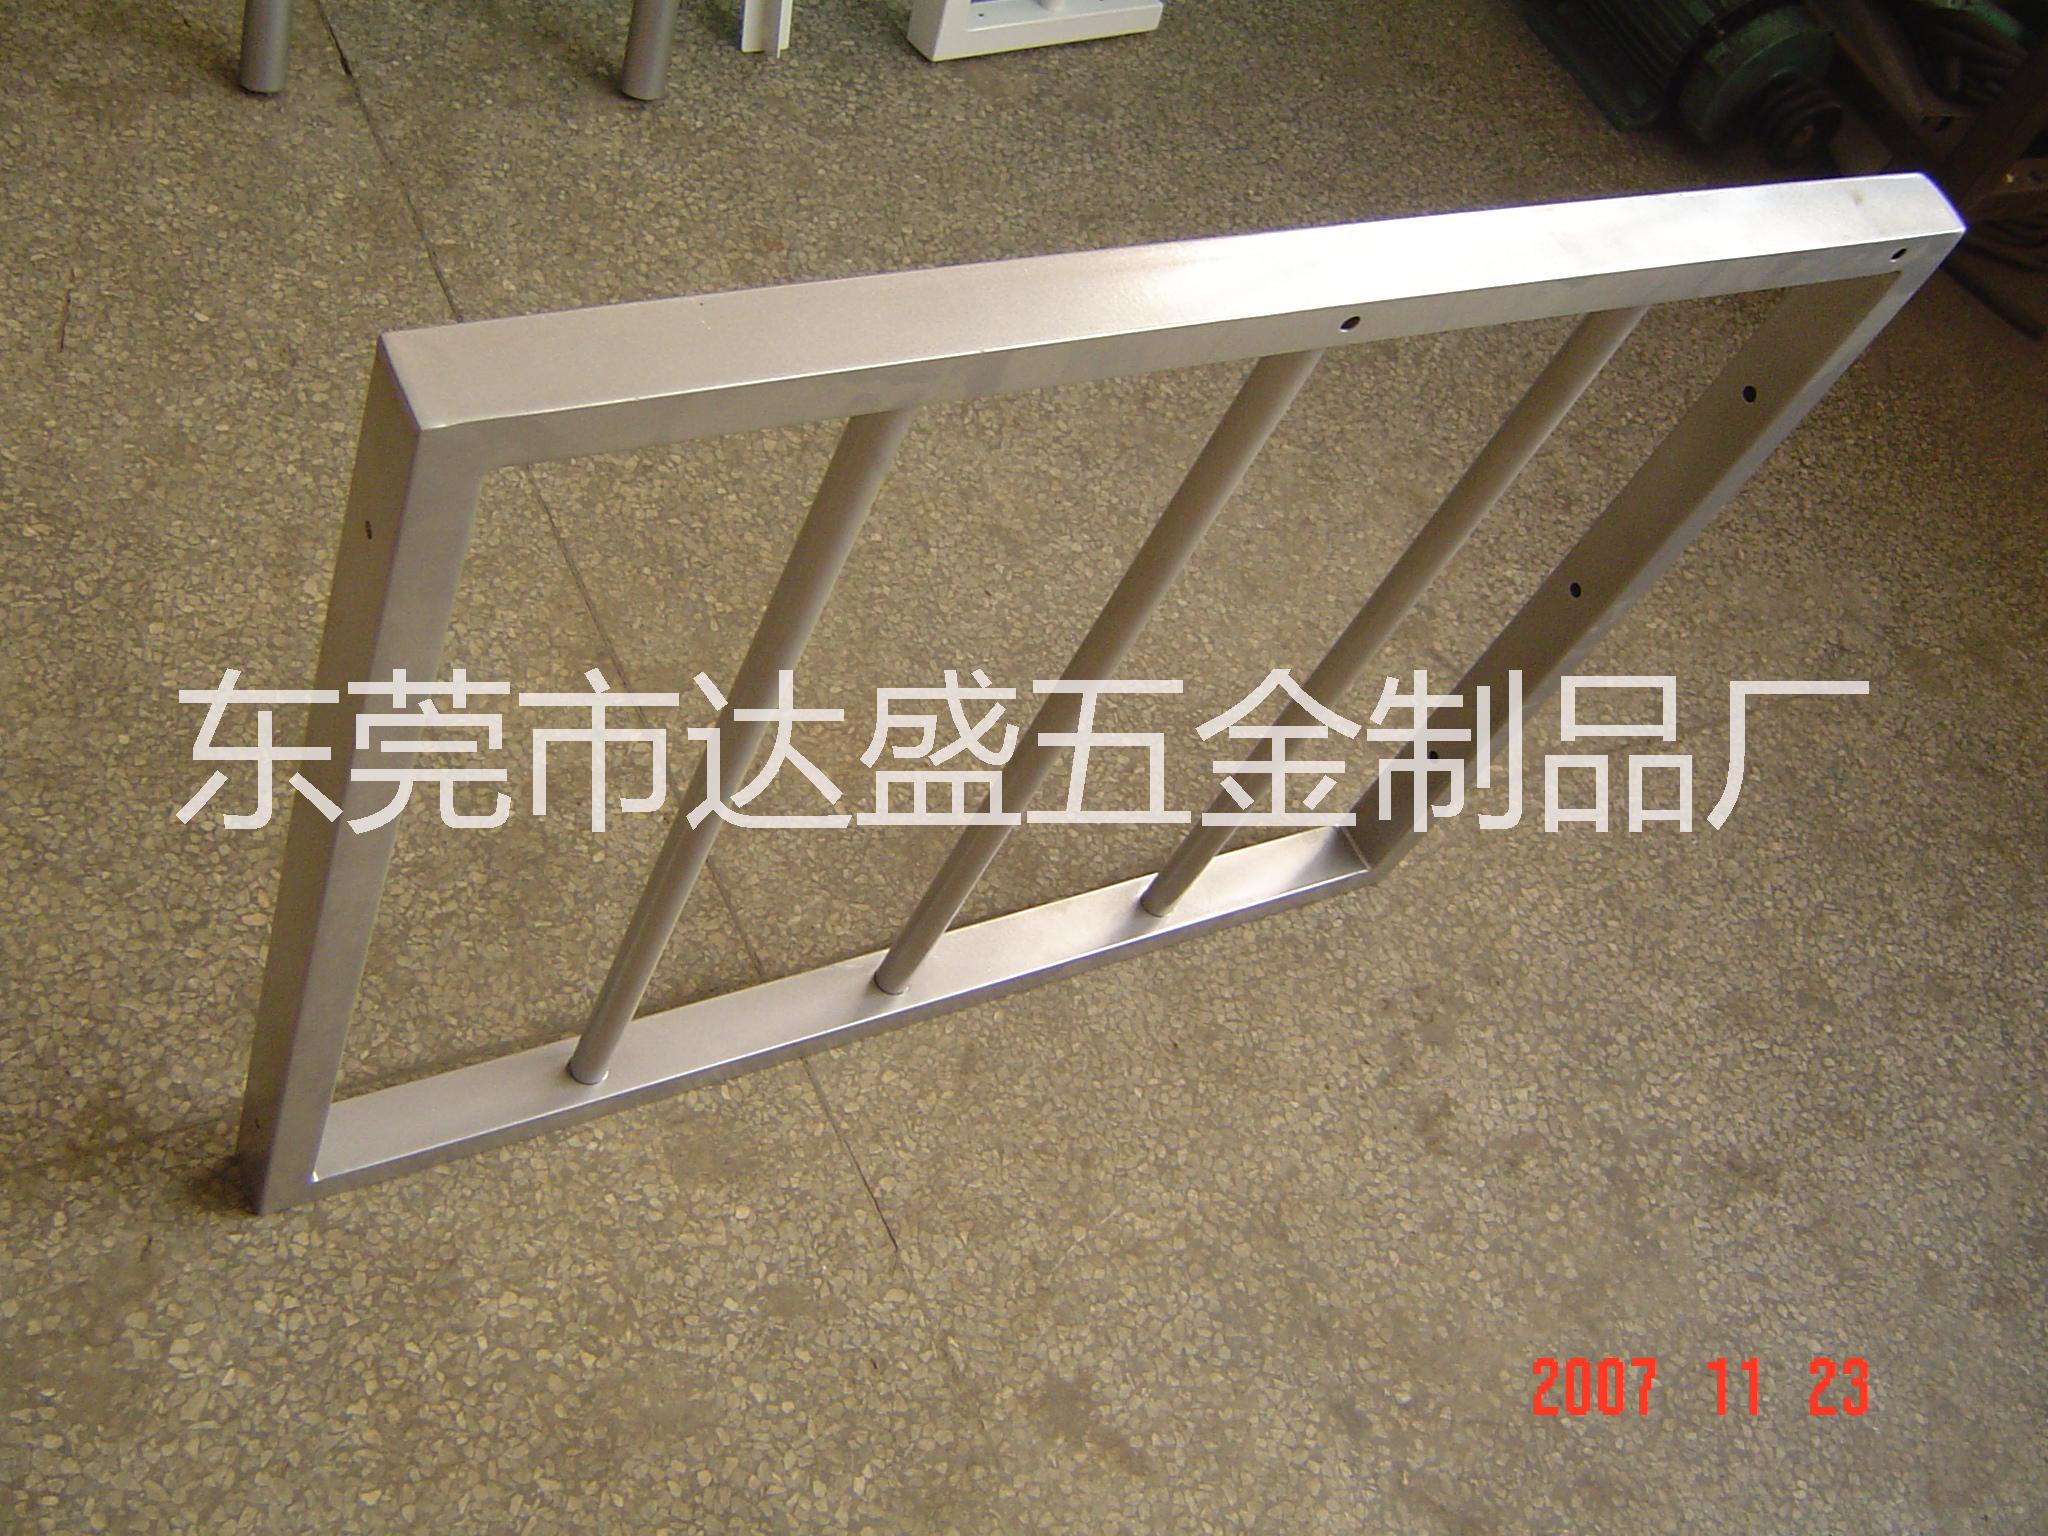 东莞厂家供应各类五金家居制品不锈钢椅凳支架、不锈钢产品